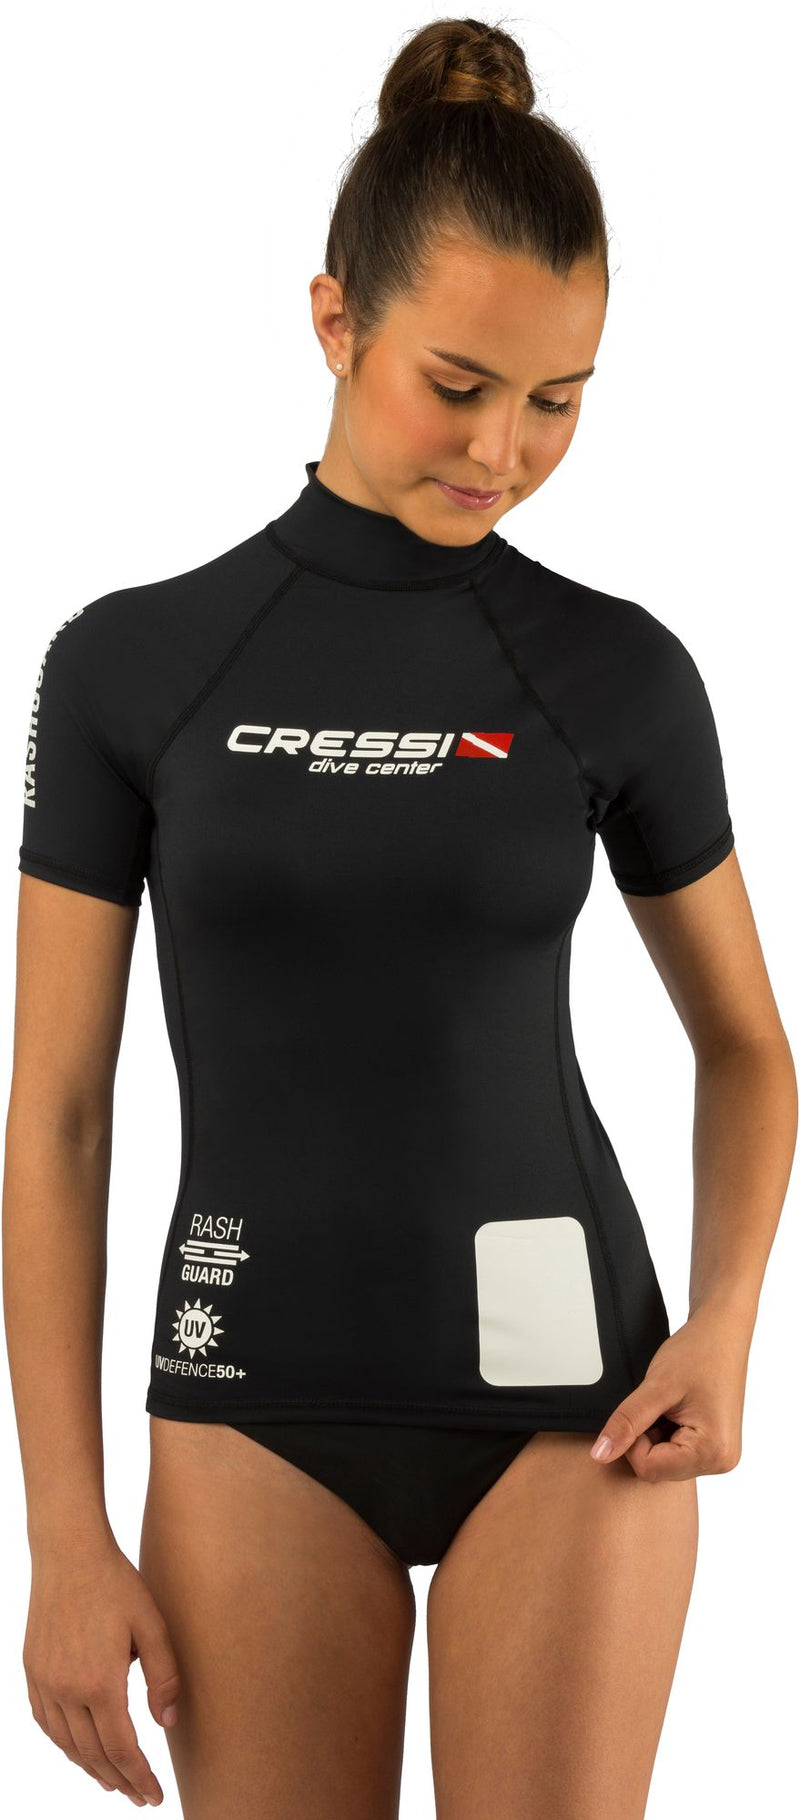 Cressi Dive Center Rashguard Shirt Lady immersion subacque protezion protettiv scuba diving protect rashguard short long sleeve shirt lady